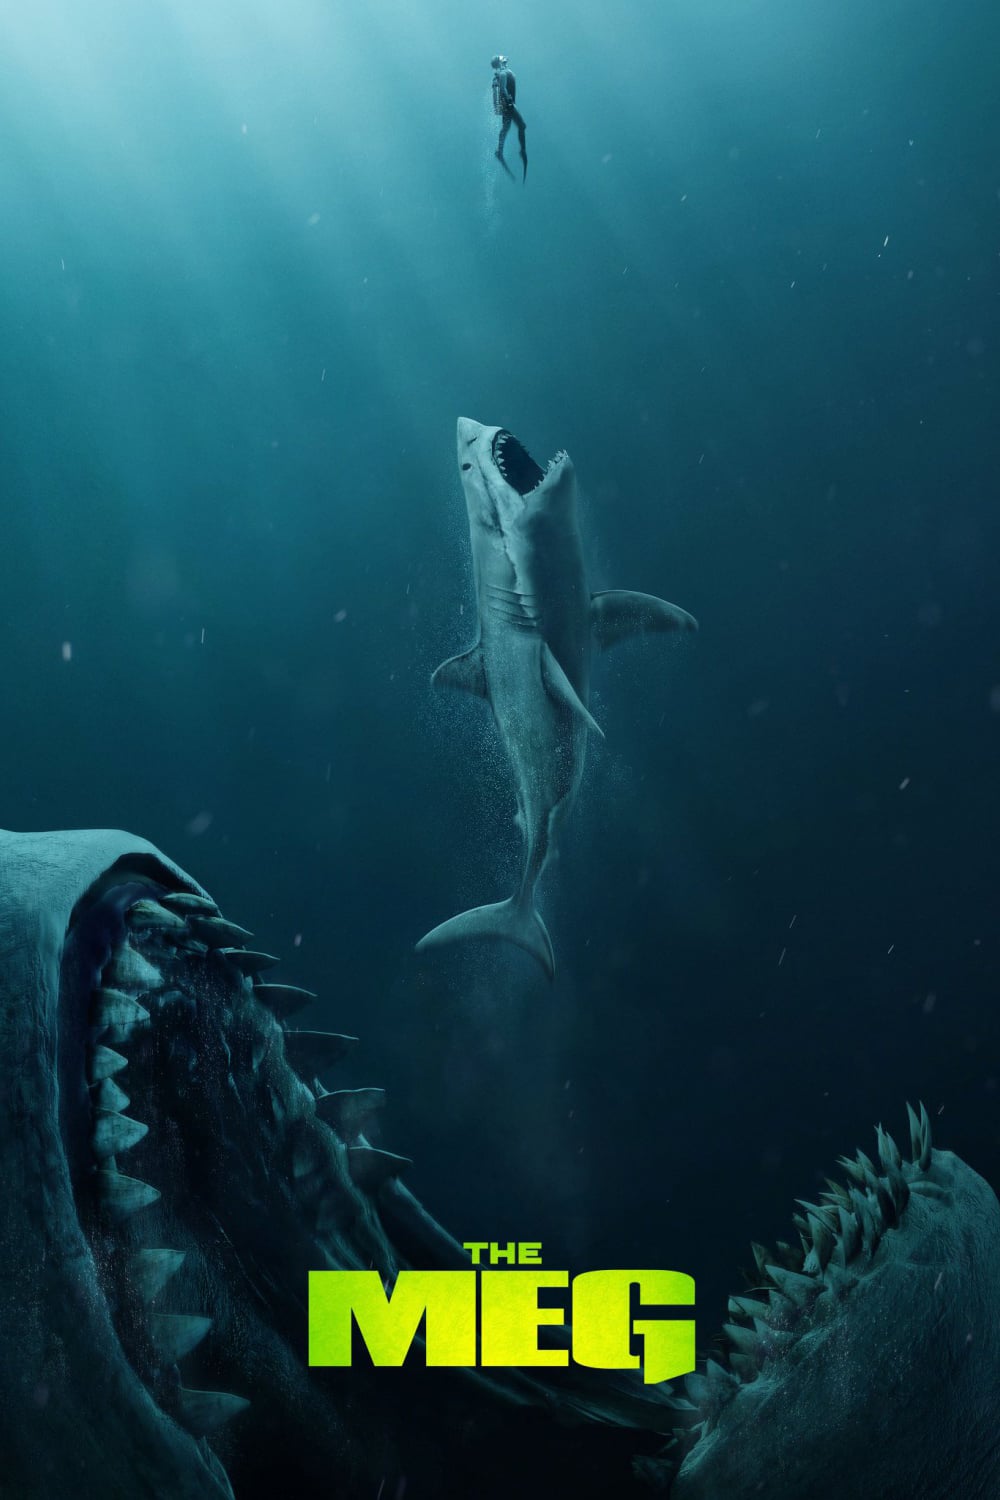 The Meg (2018) Official Trailer #1